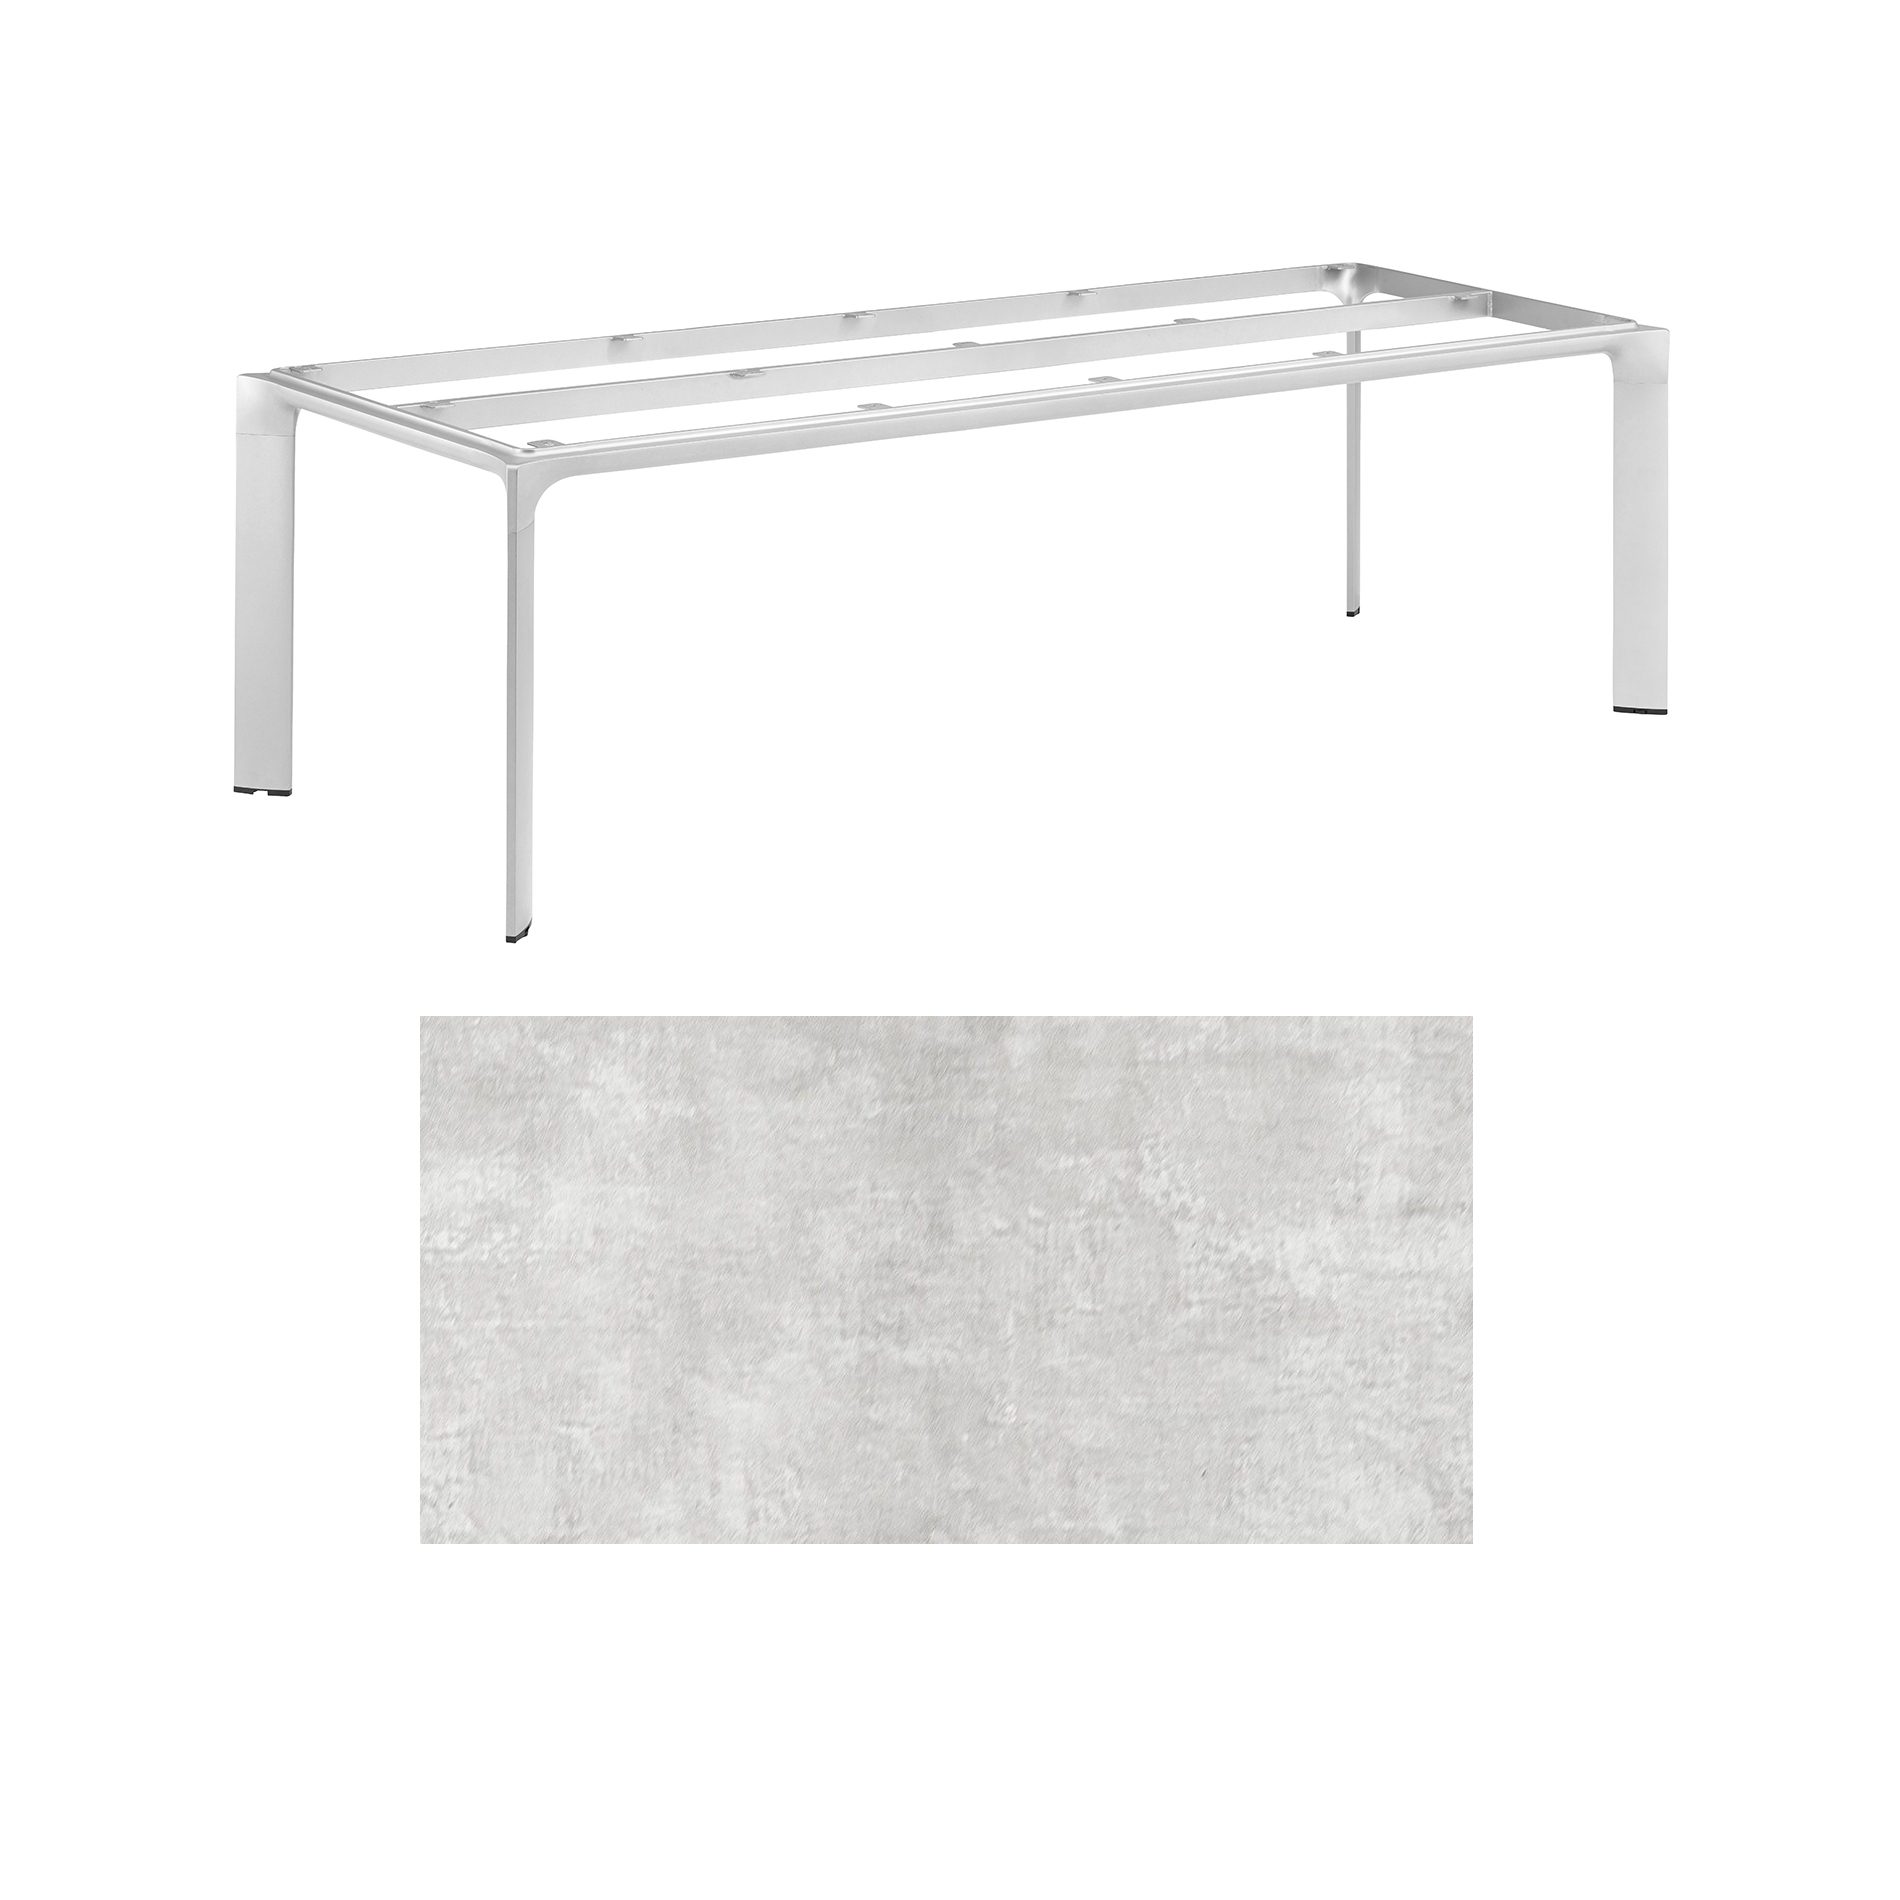 Kettler "Diamond" Tischsystem Gartentisch, Gestell Aluminium silber, Tischplatte HPL hellgrau meliert, 220x95 cm